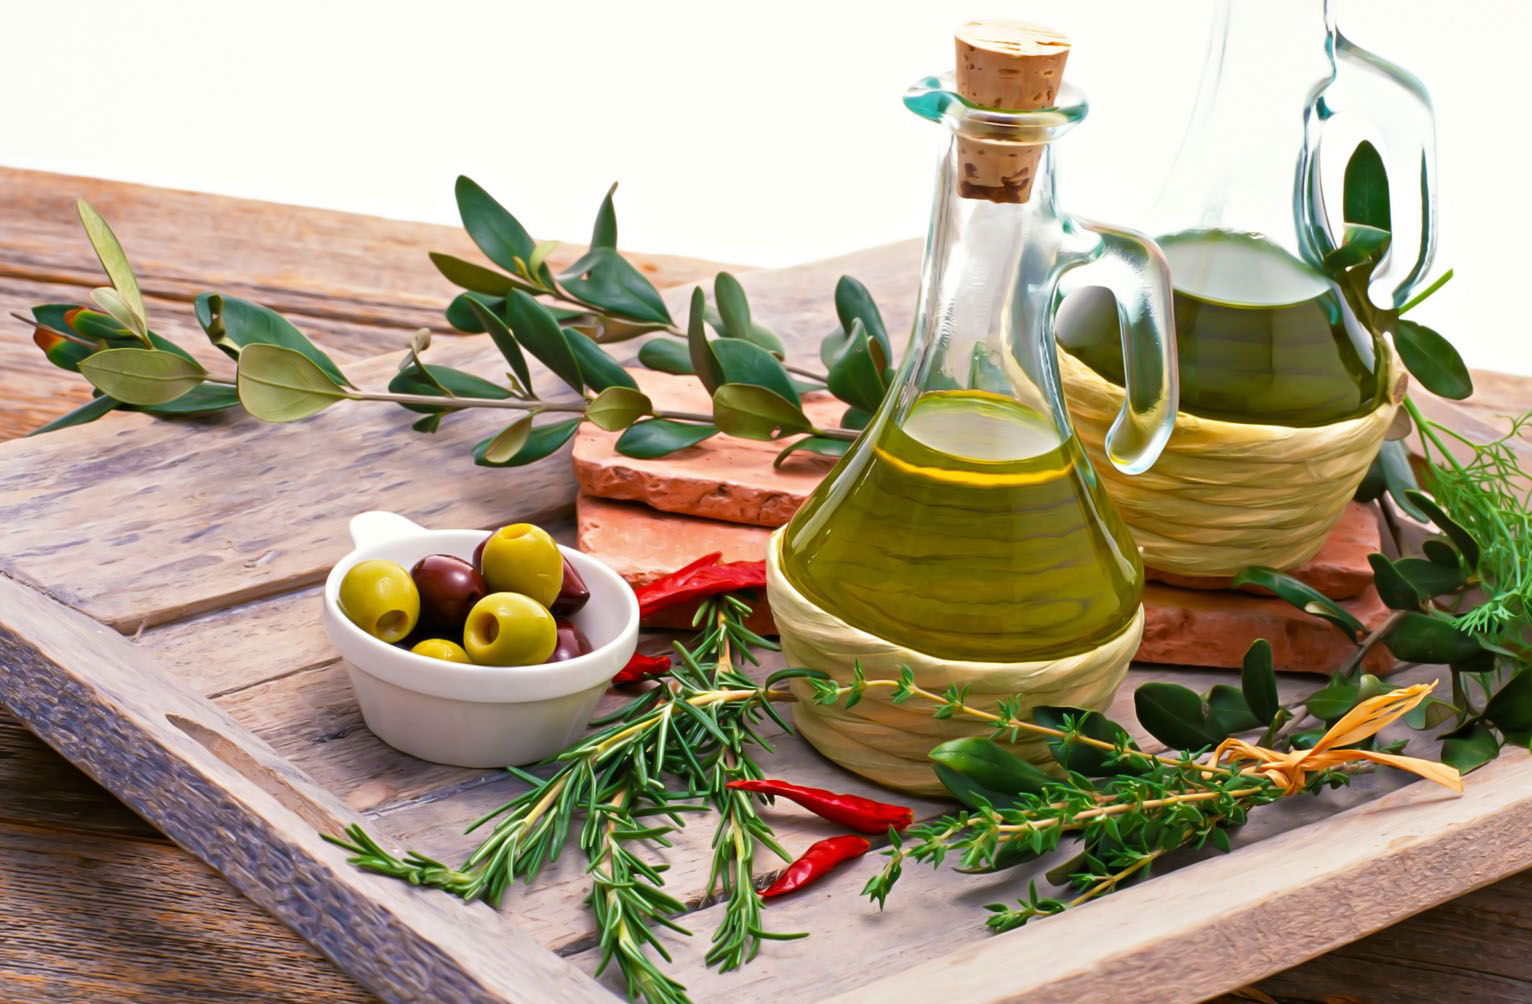 Лавровый лист оливковое масло. Оливковое масло. Оливки и оливковое масло. Зеленое оливковое масло. Греческие оливки.